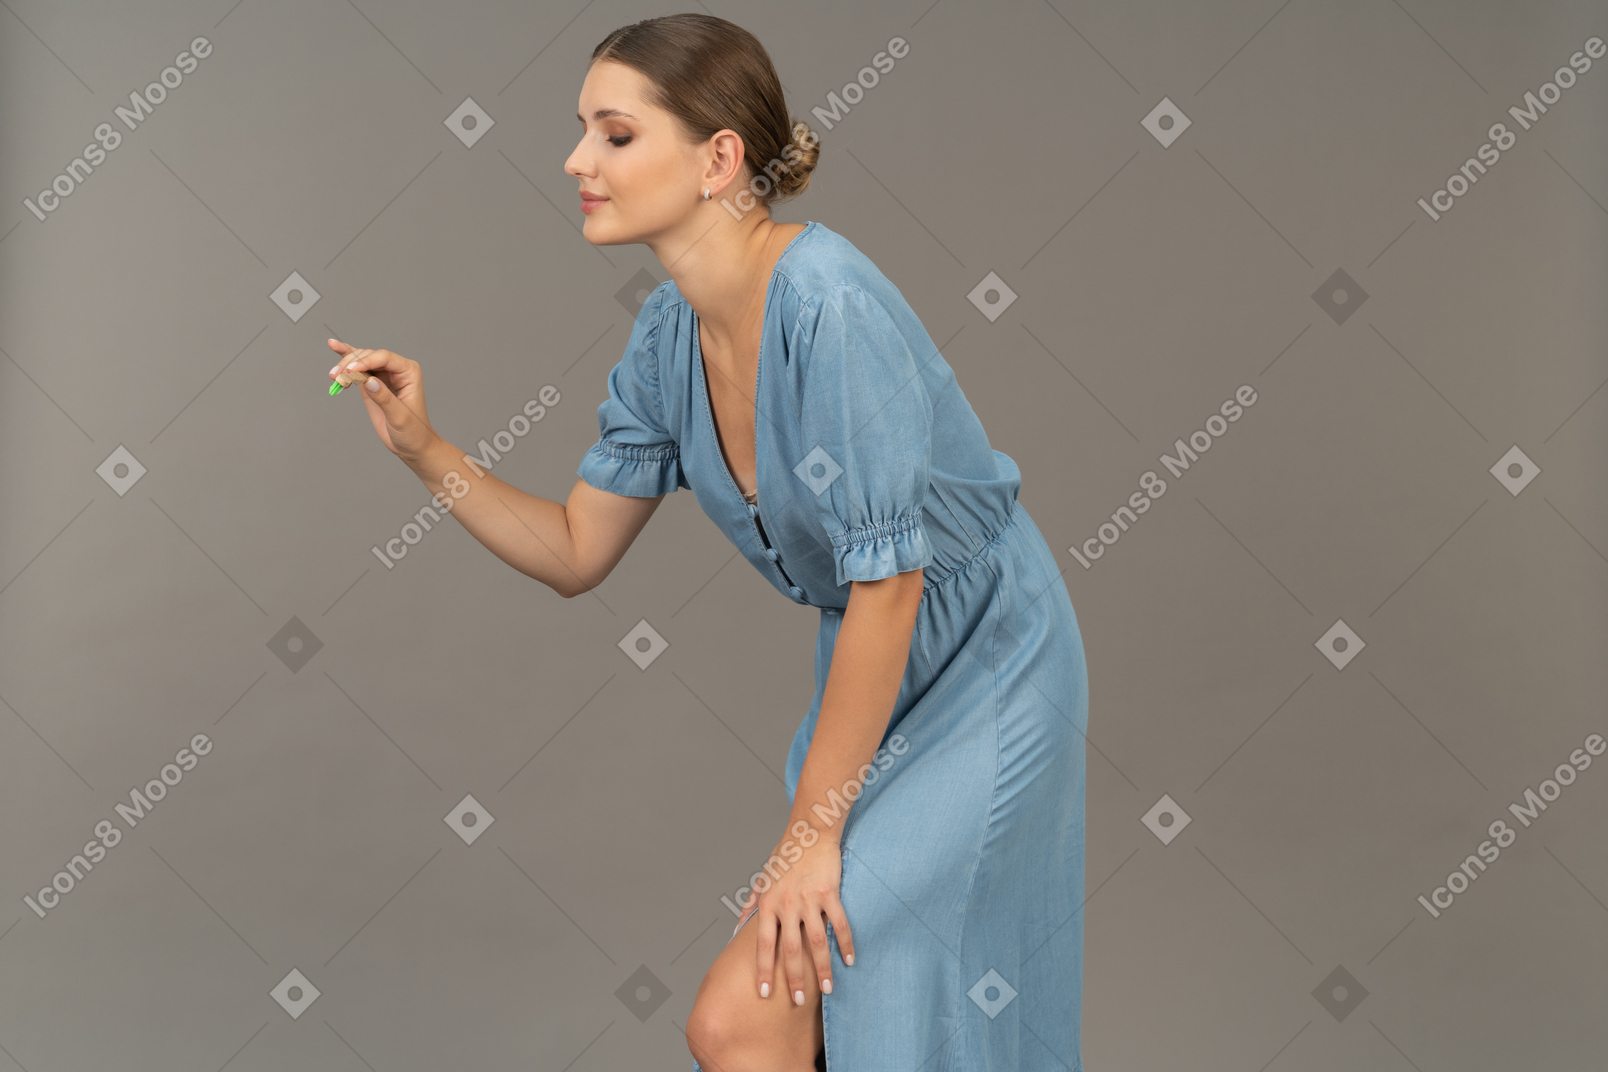 Vista lateral de uma jovem de vestido azul segurando uma escova de dentes e inclinada para a frente